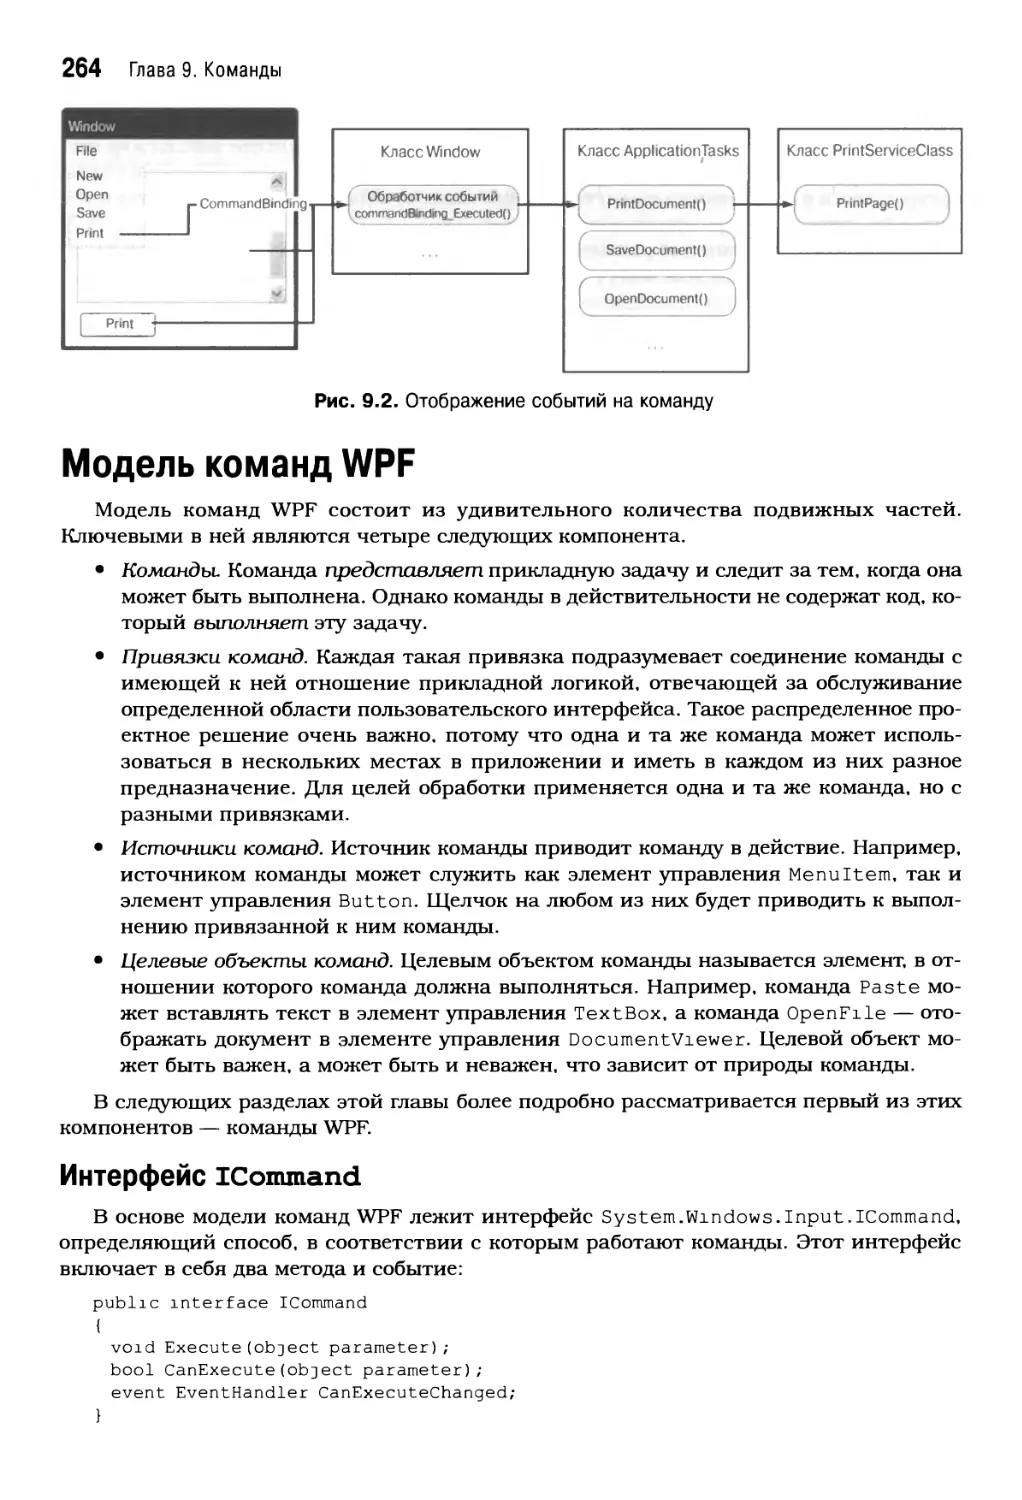 Модель команд WPF